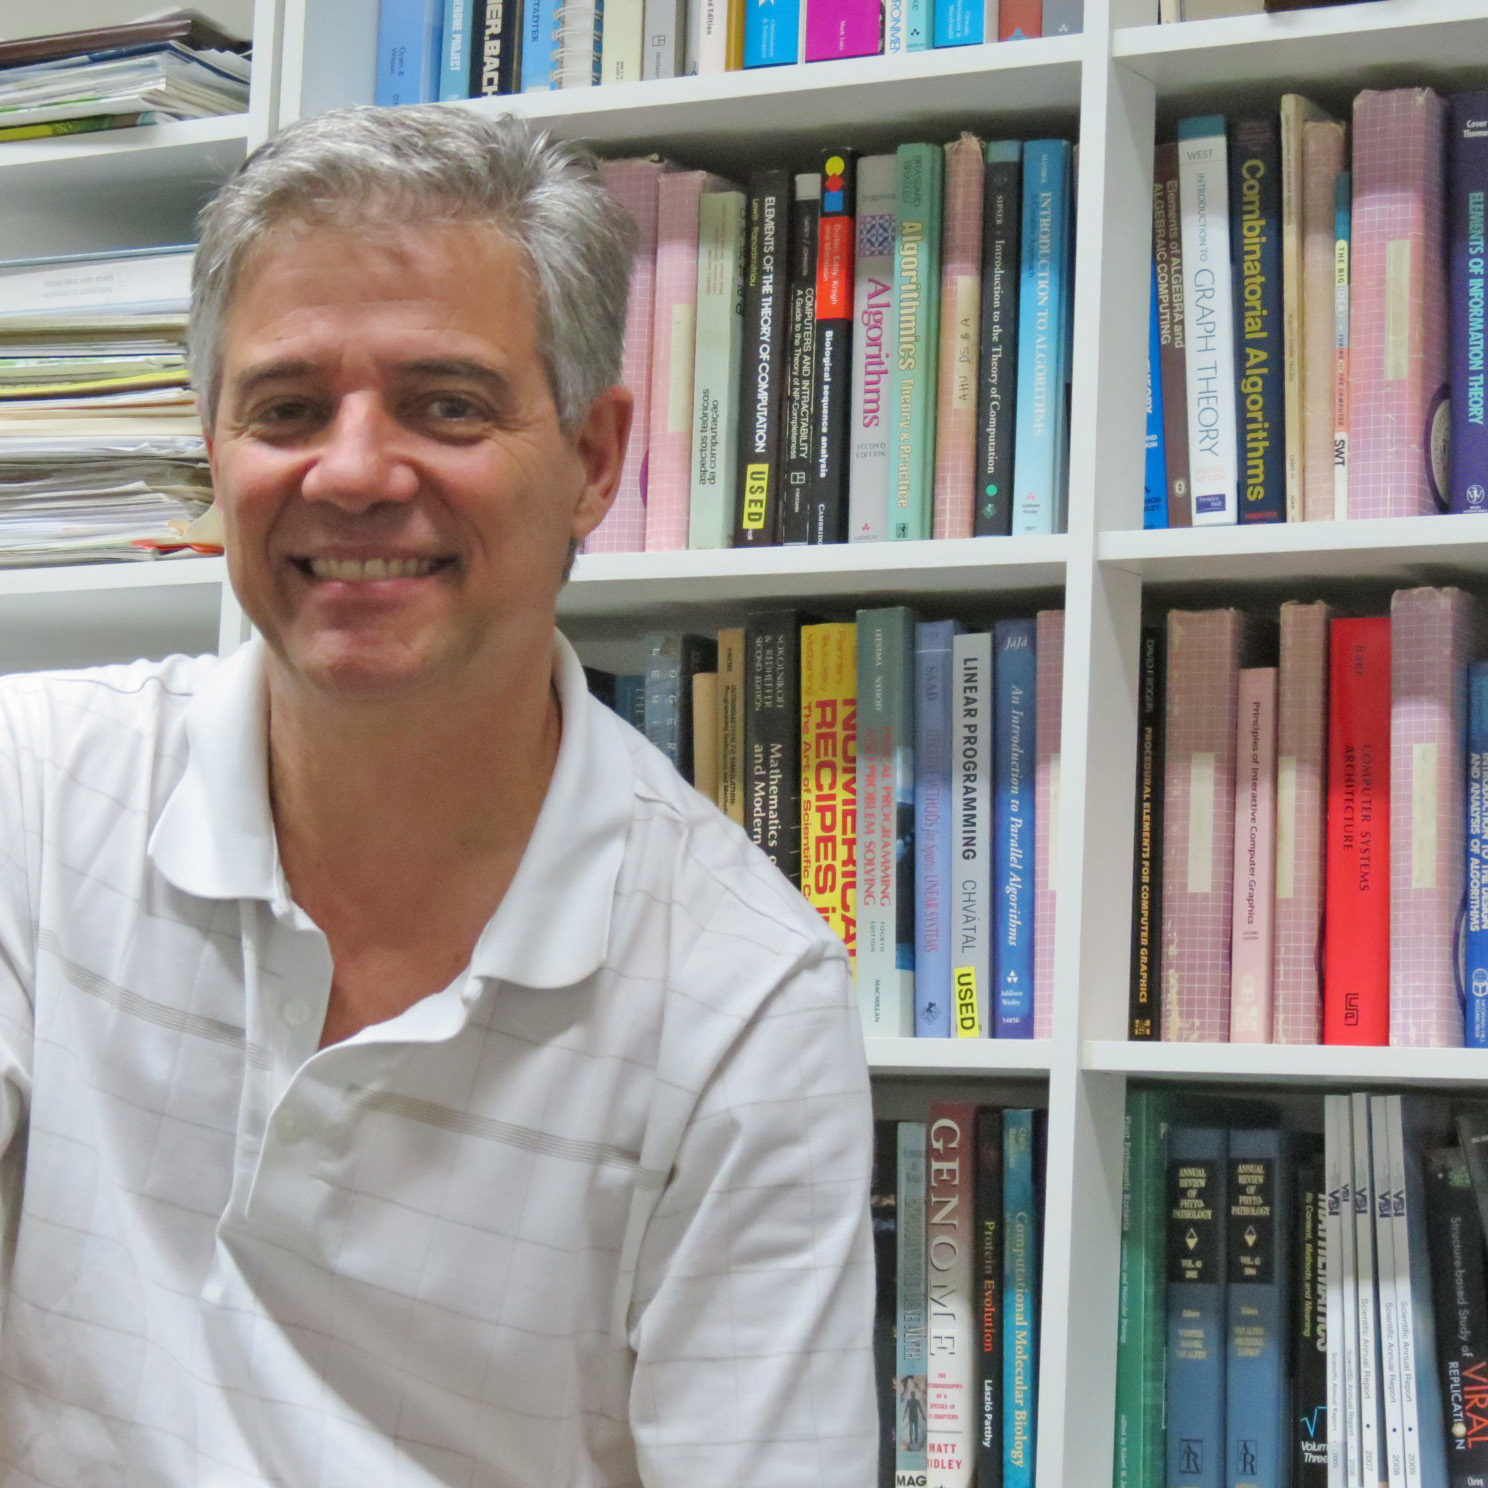 João Carlos Setubal

Professor no Departamento de Bioquímica -Universidade de São Paulo (USP)